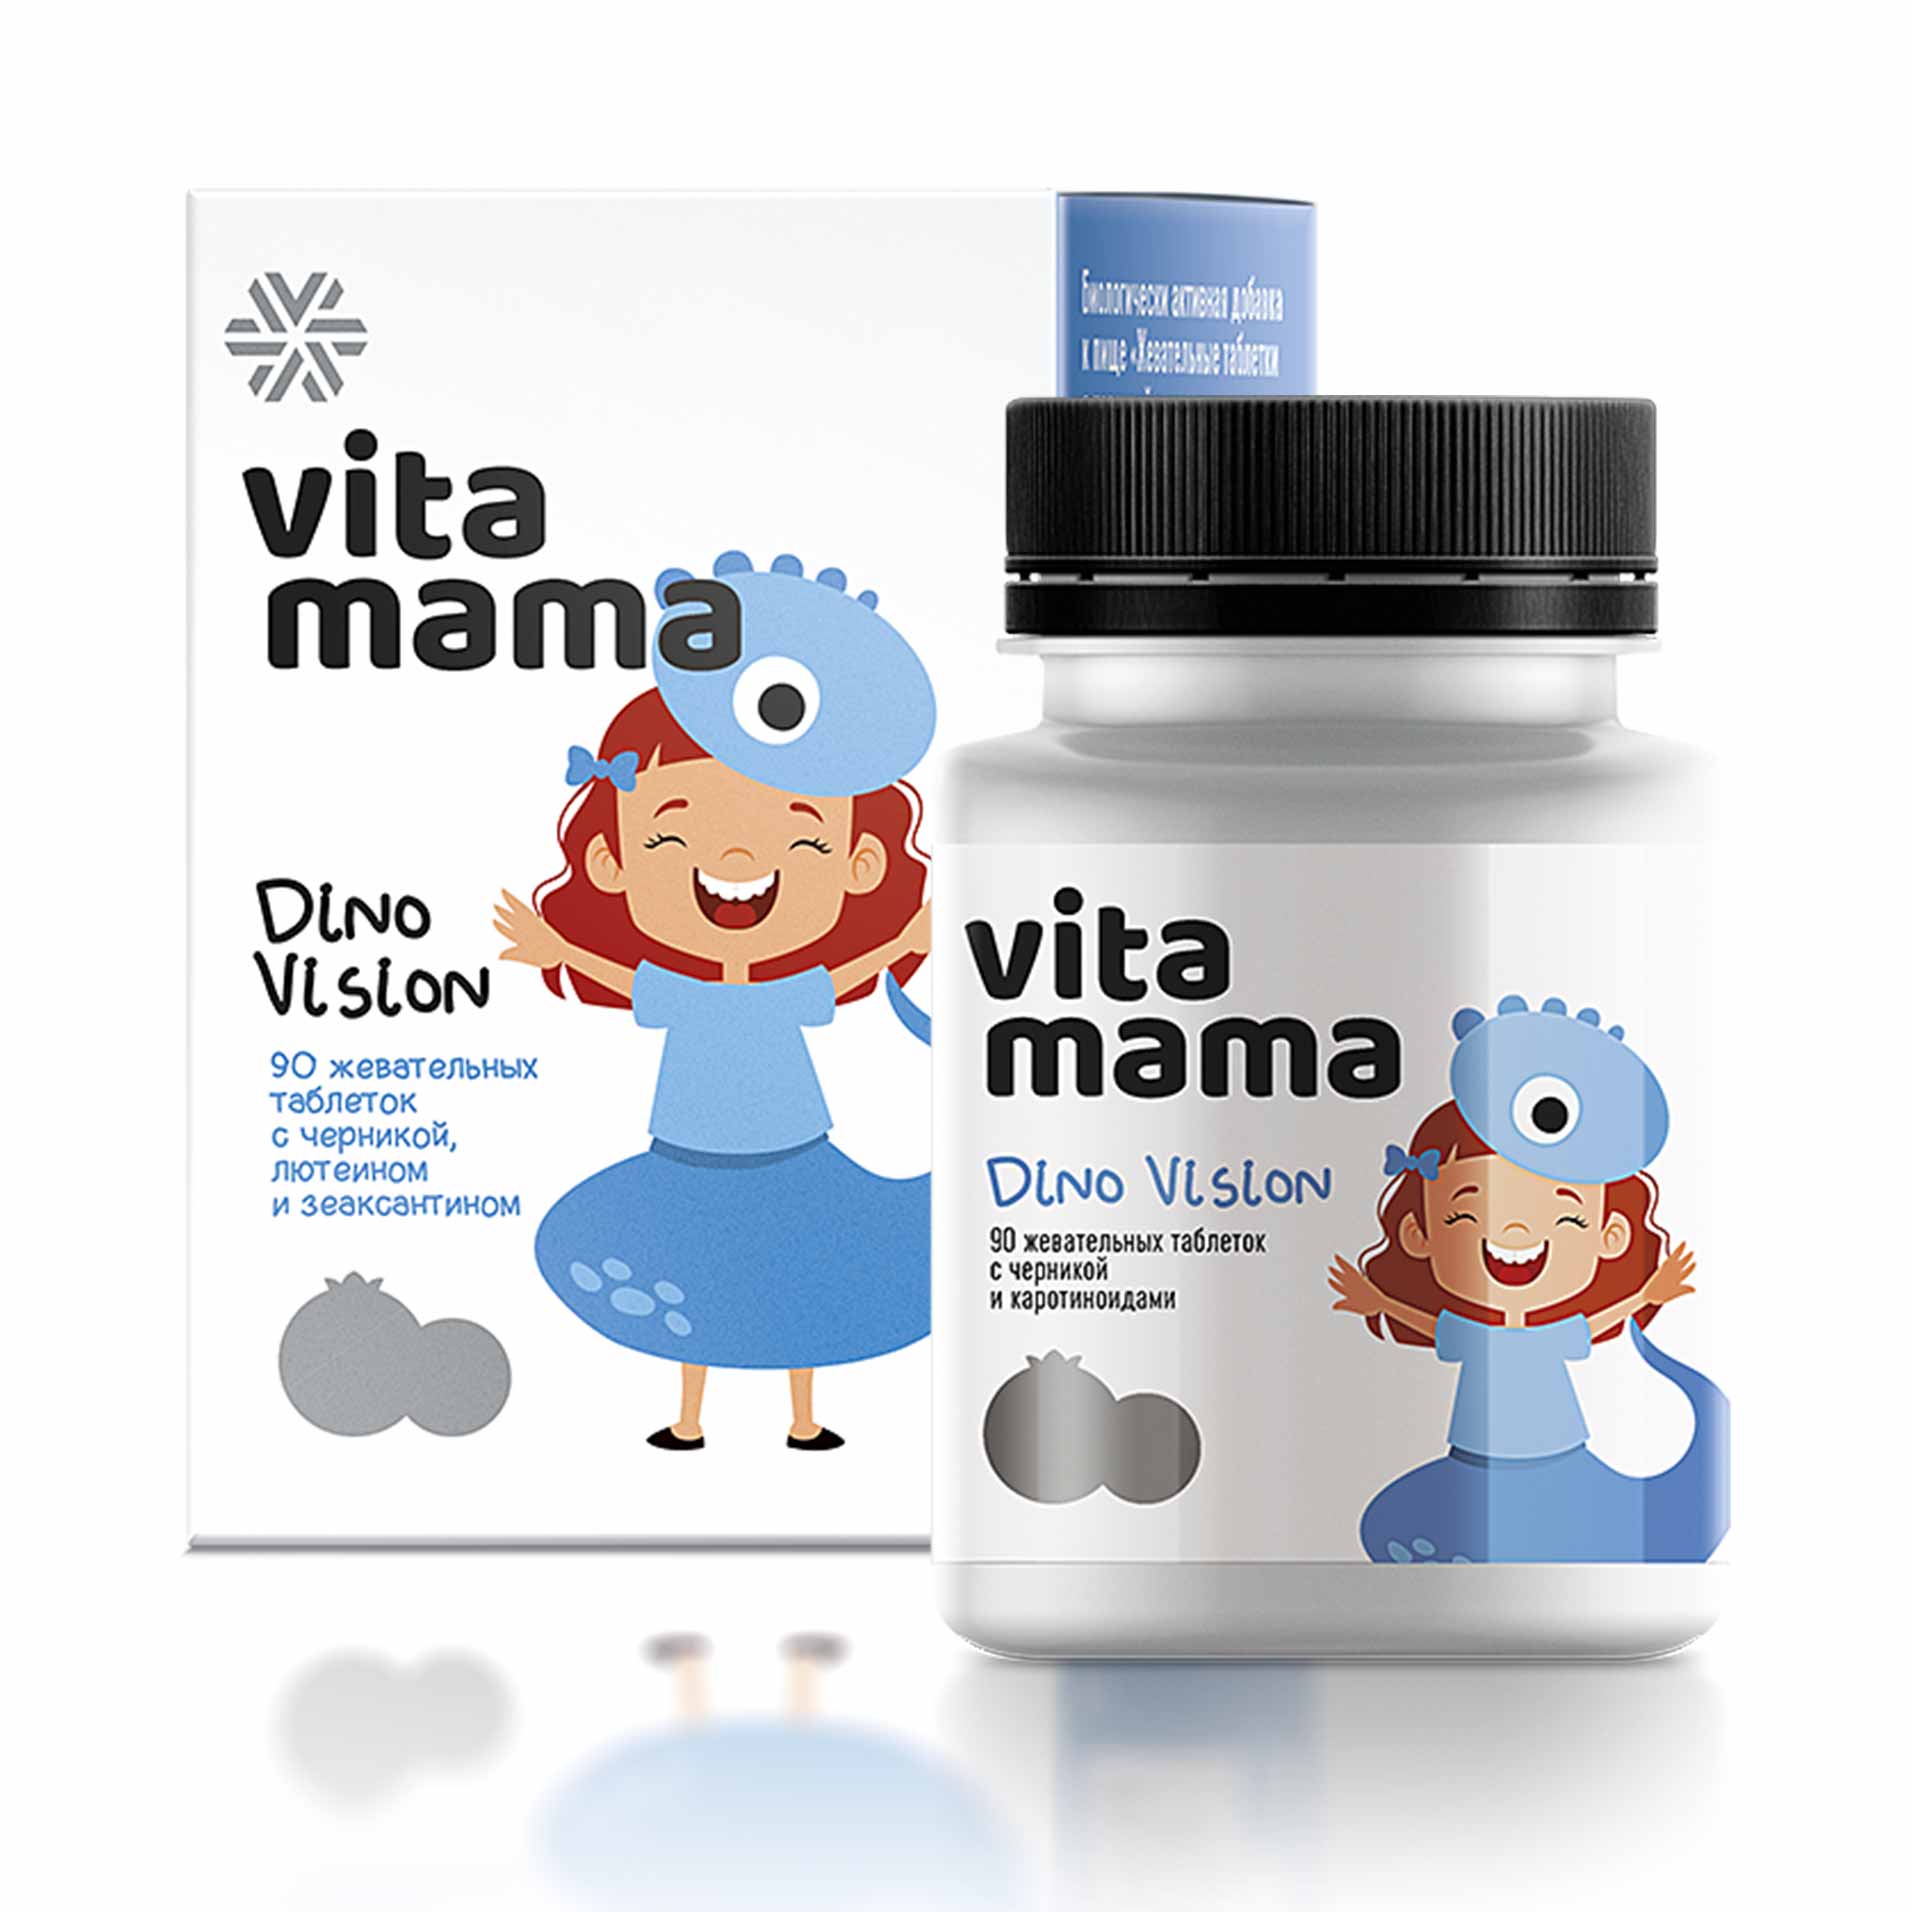 Vitamama - Dino Vision, жевательные таблетки с черникой